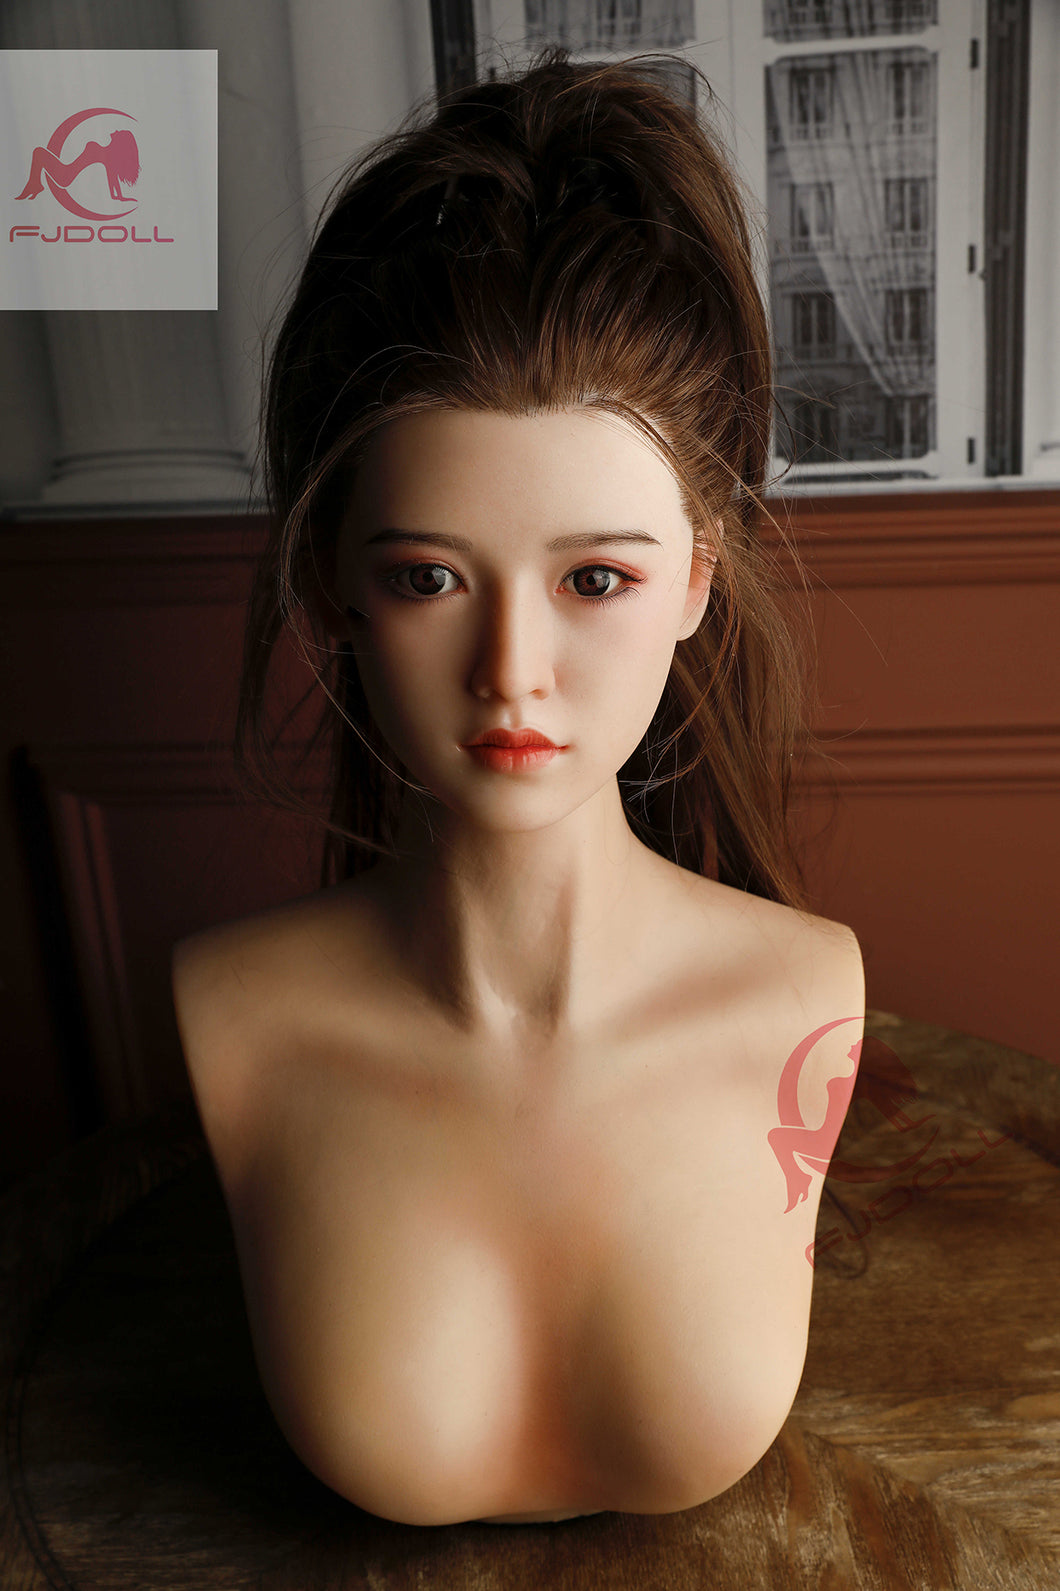 FJ Doll Realistic M16 Bust Sex Doll Stand